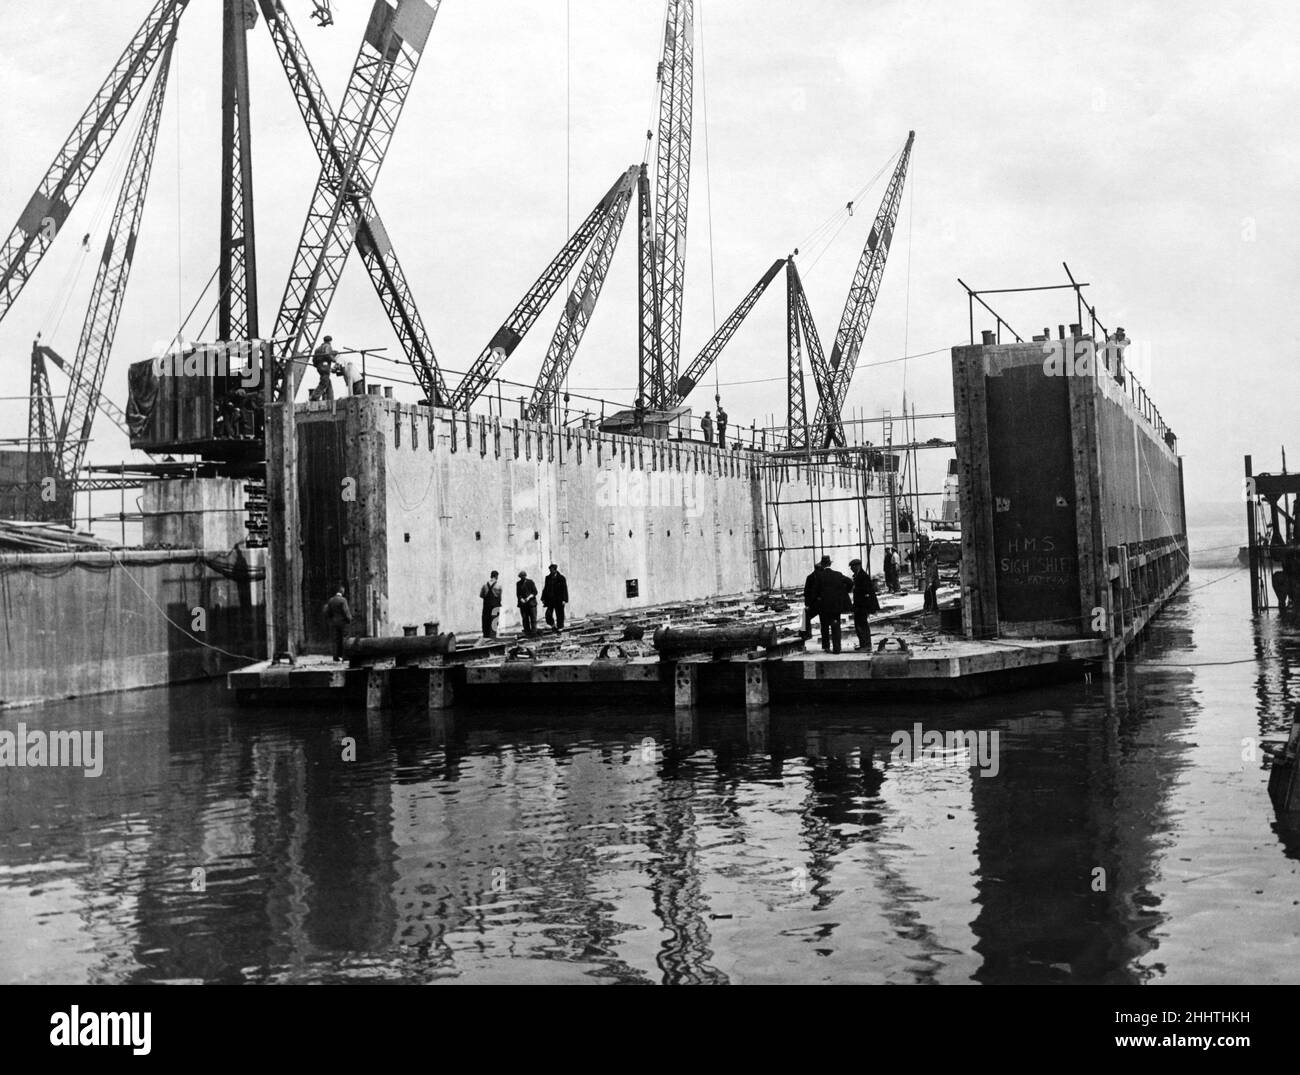 Bromborough, Wirral, Merseyside. In Bromborough wurde ein Trockendock aus Stahlbeton gestartet, bevor es in den Fernen Osten gebracht wurde, um im Krieg gegen Japan zu helfen. Das Dock, das nach Fertigstellung zwischen 2000 und 2500 Tonnen wiegen wird, wurde in 27 Arbeitstagen gebaut. 11th. Juli 1945. Stockfoto